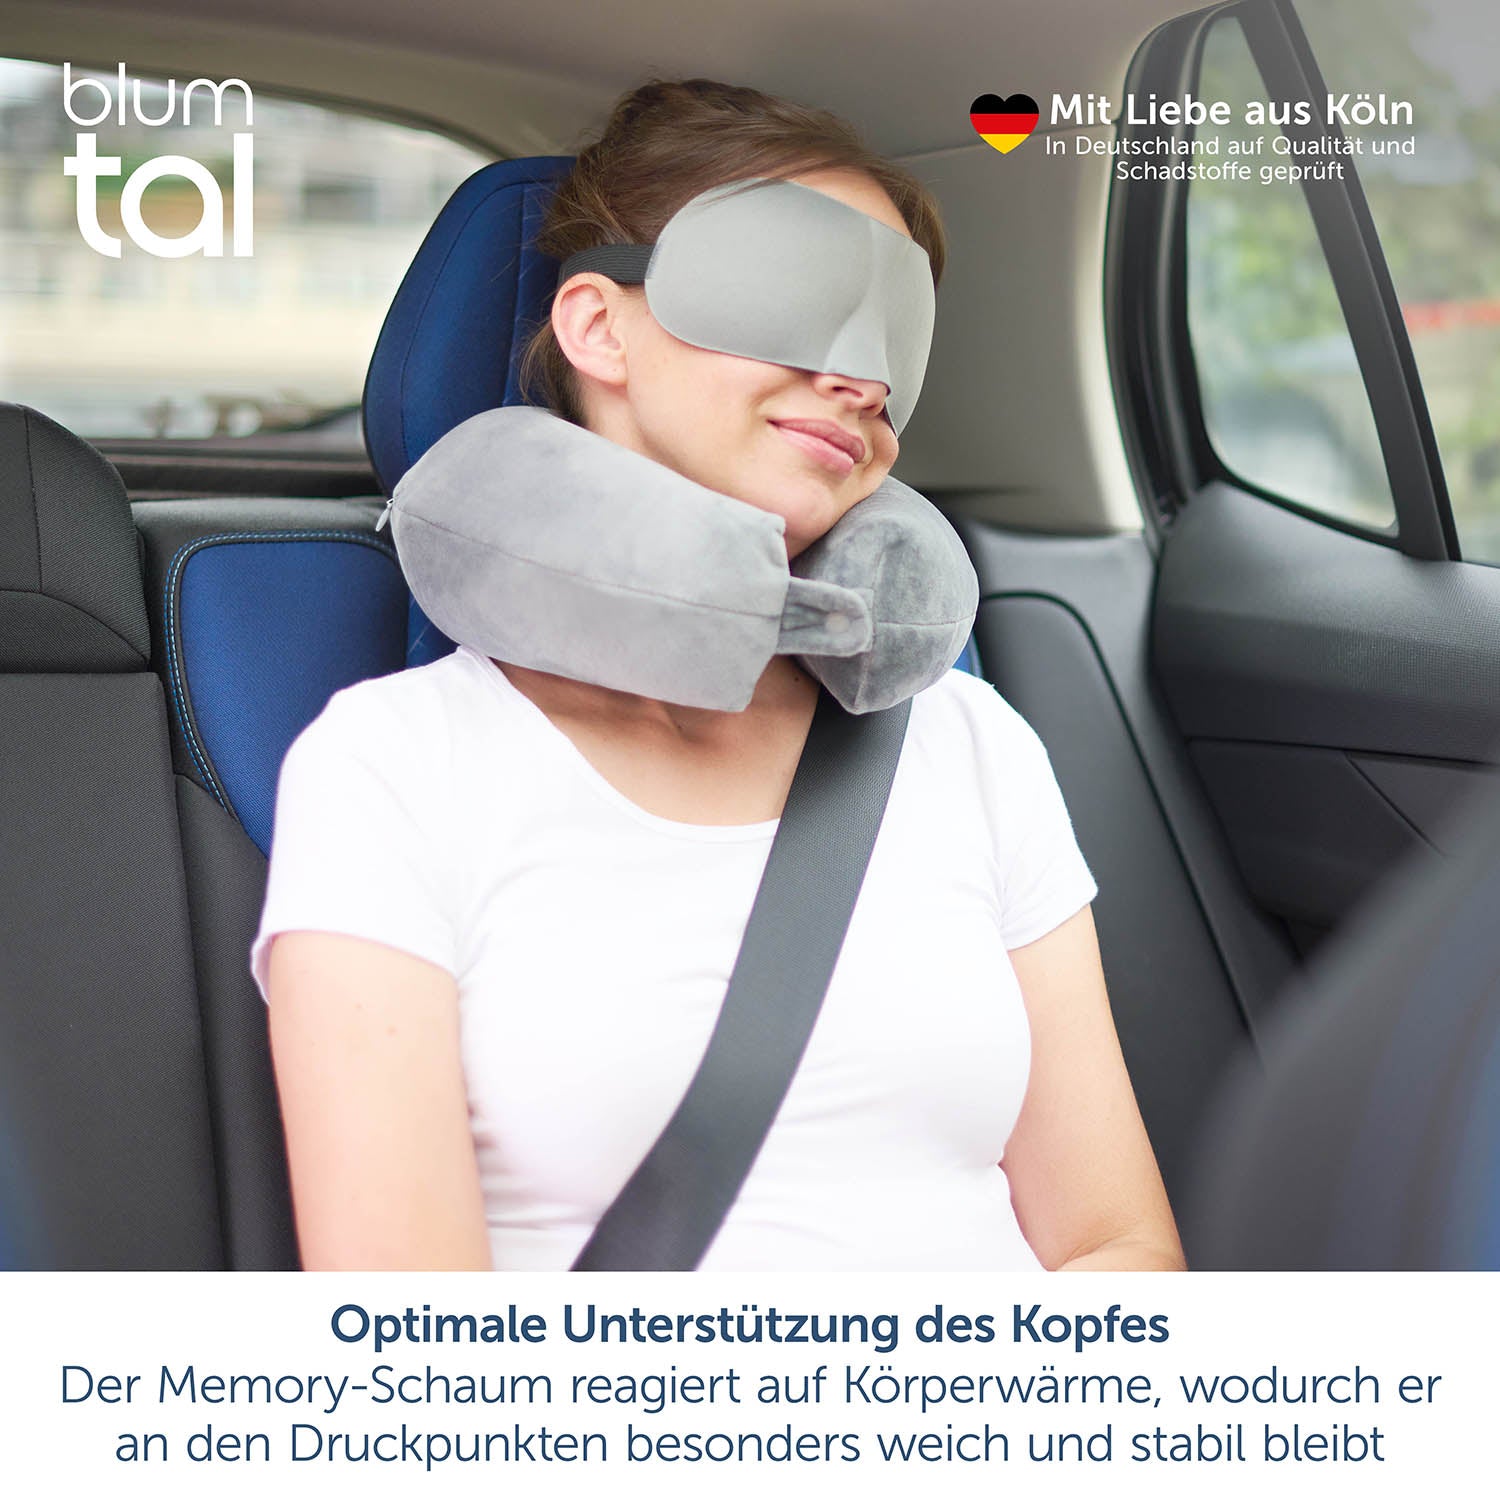 Das Bild zeigt eine junge Frau, die im Beifahrersitz eines Autos sitzt und ein graues Nackenkissen trägt. Sie hat auch eine Schlafmaske auf und lehnt entspannt zurück, wobei der Sicherheitsgurt angelegt ist. Oben links im Bild ist das blumtal-Logo zu sehen. Oben rechts steht "Mit Liebe aus Köln" und darunter "In Deutschland auf Qualität und Schadstoffe geprüft" neben einem deutschen Herz-Icon.